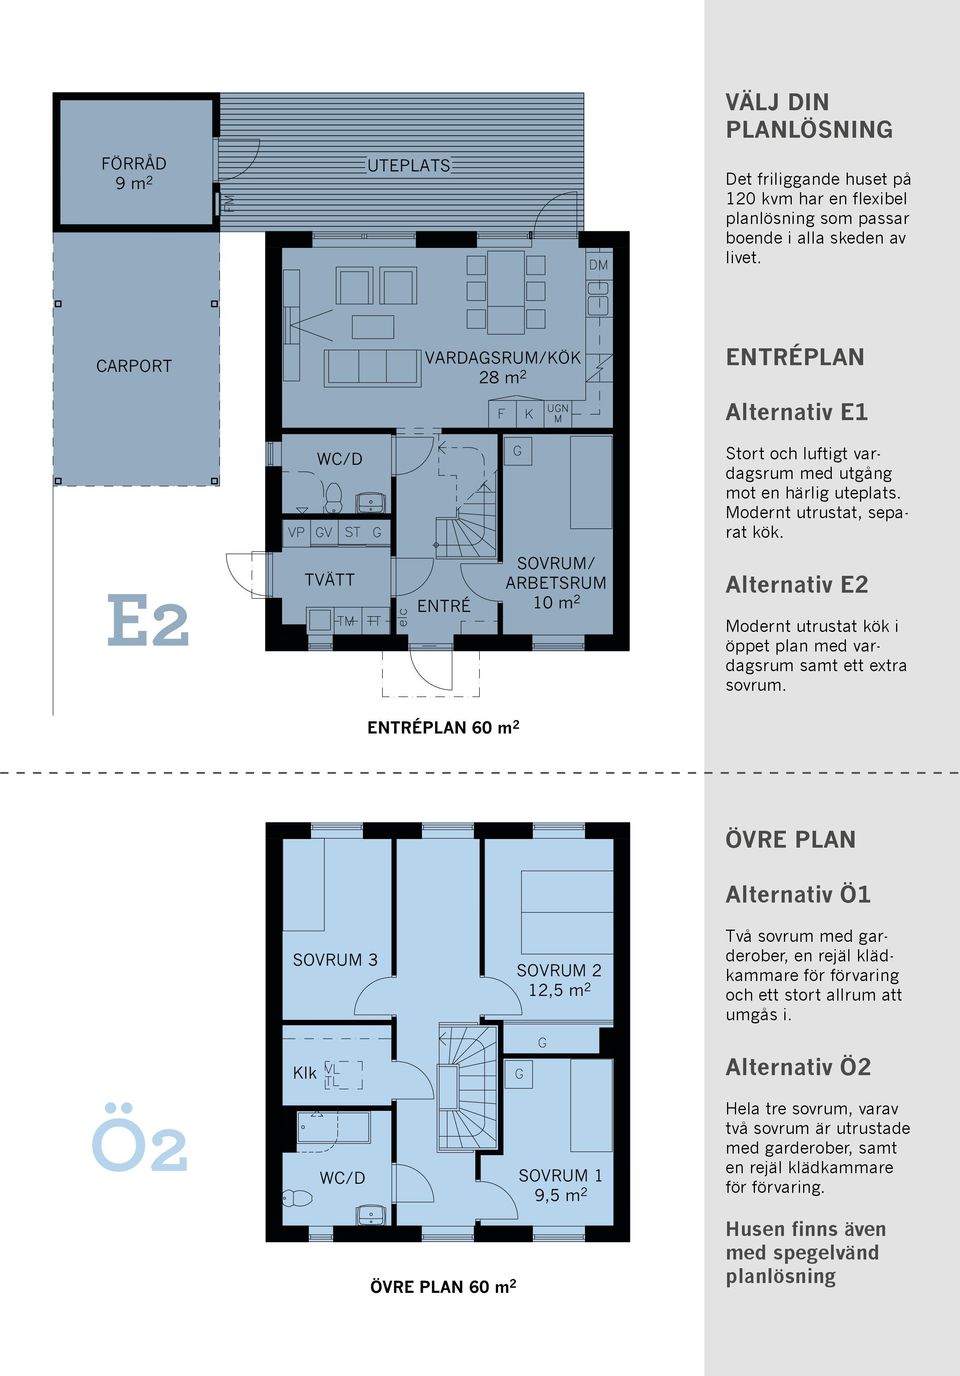 E2 TVÄTT ENTRÉ SOVRUM/ ARBETSRUM 10 m 2 Alternativ E2 Modernt utrustat kök i öppet plan med vardagsrum samt ett extra sovrum.